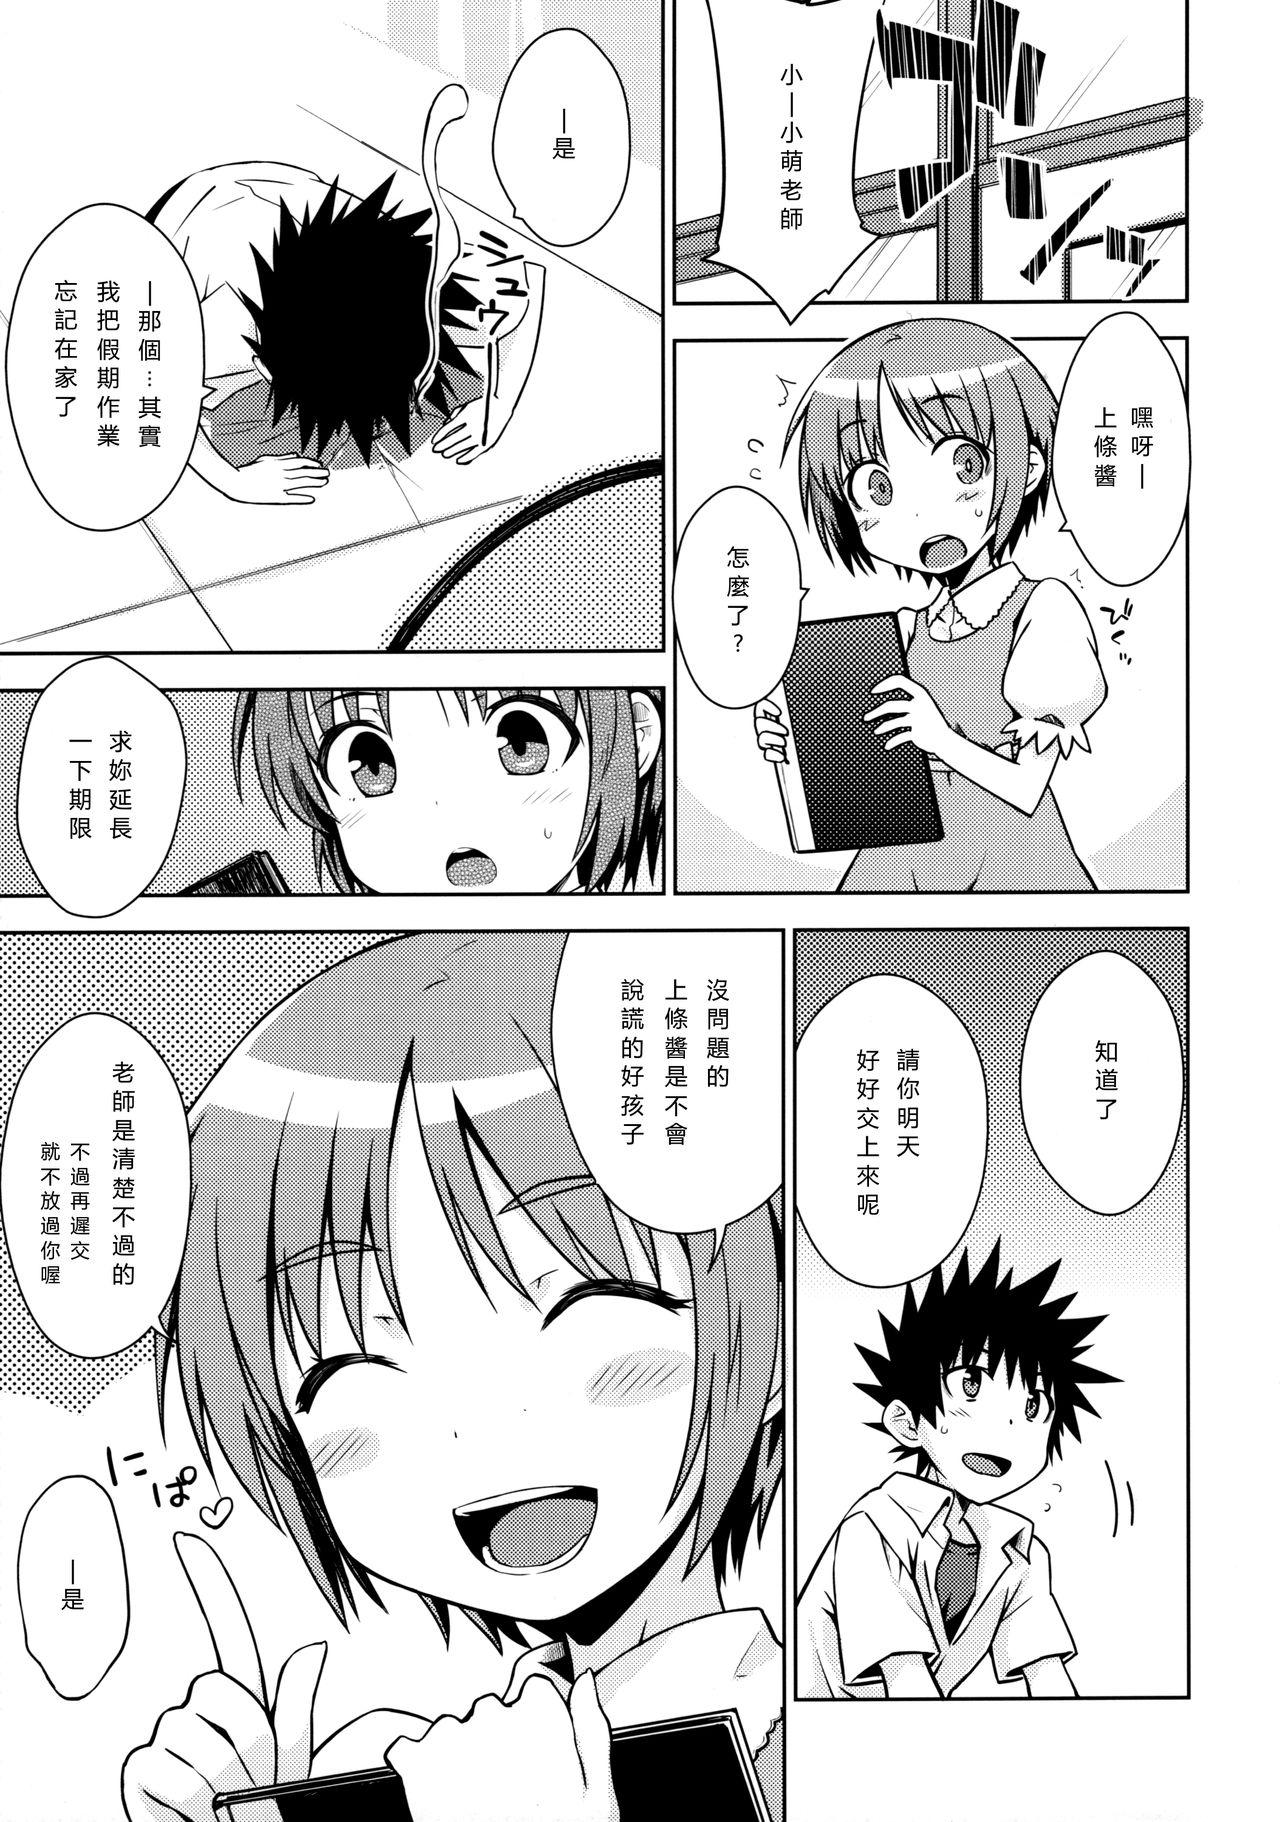 Comendo Natsuyasumi no Shukudai | Summer homework - Toaru kagaku no railgun | a certain scientific railgun Uncensored - Page 4